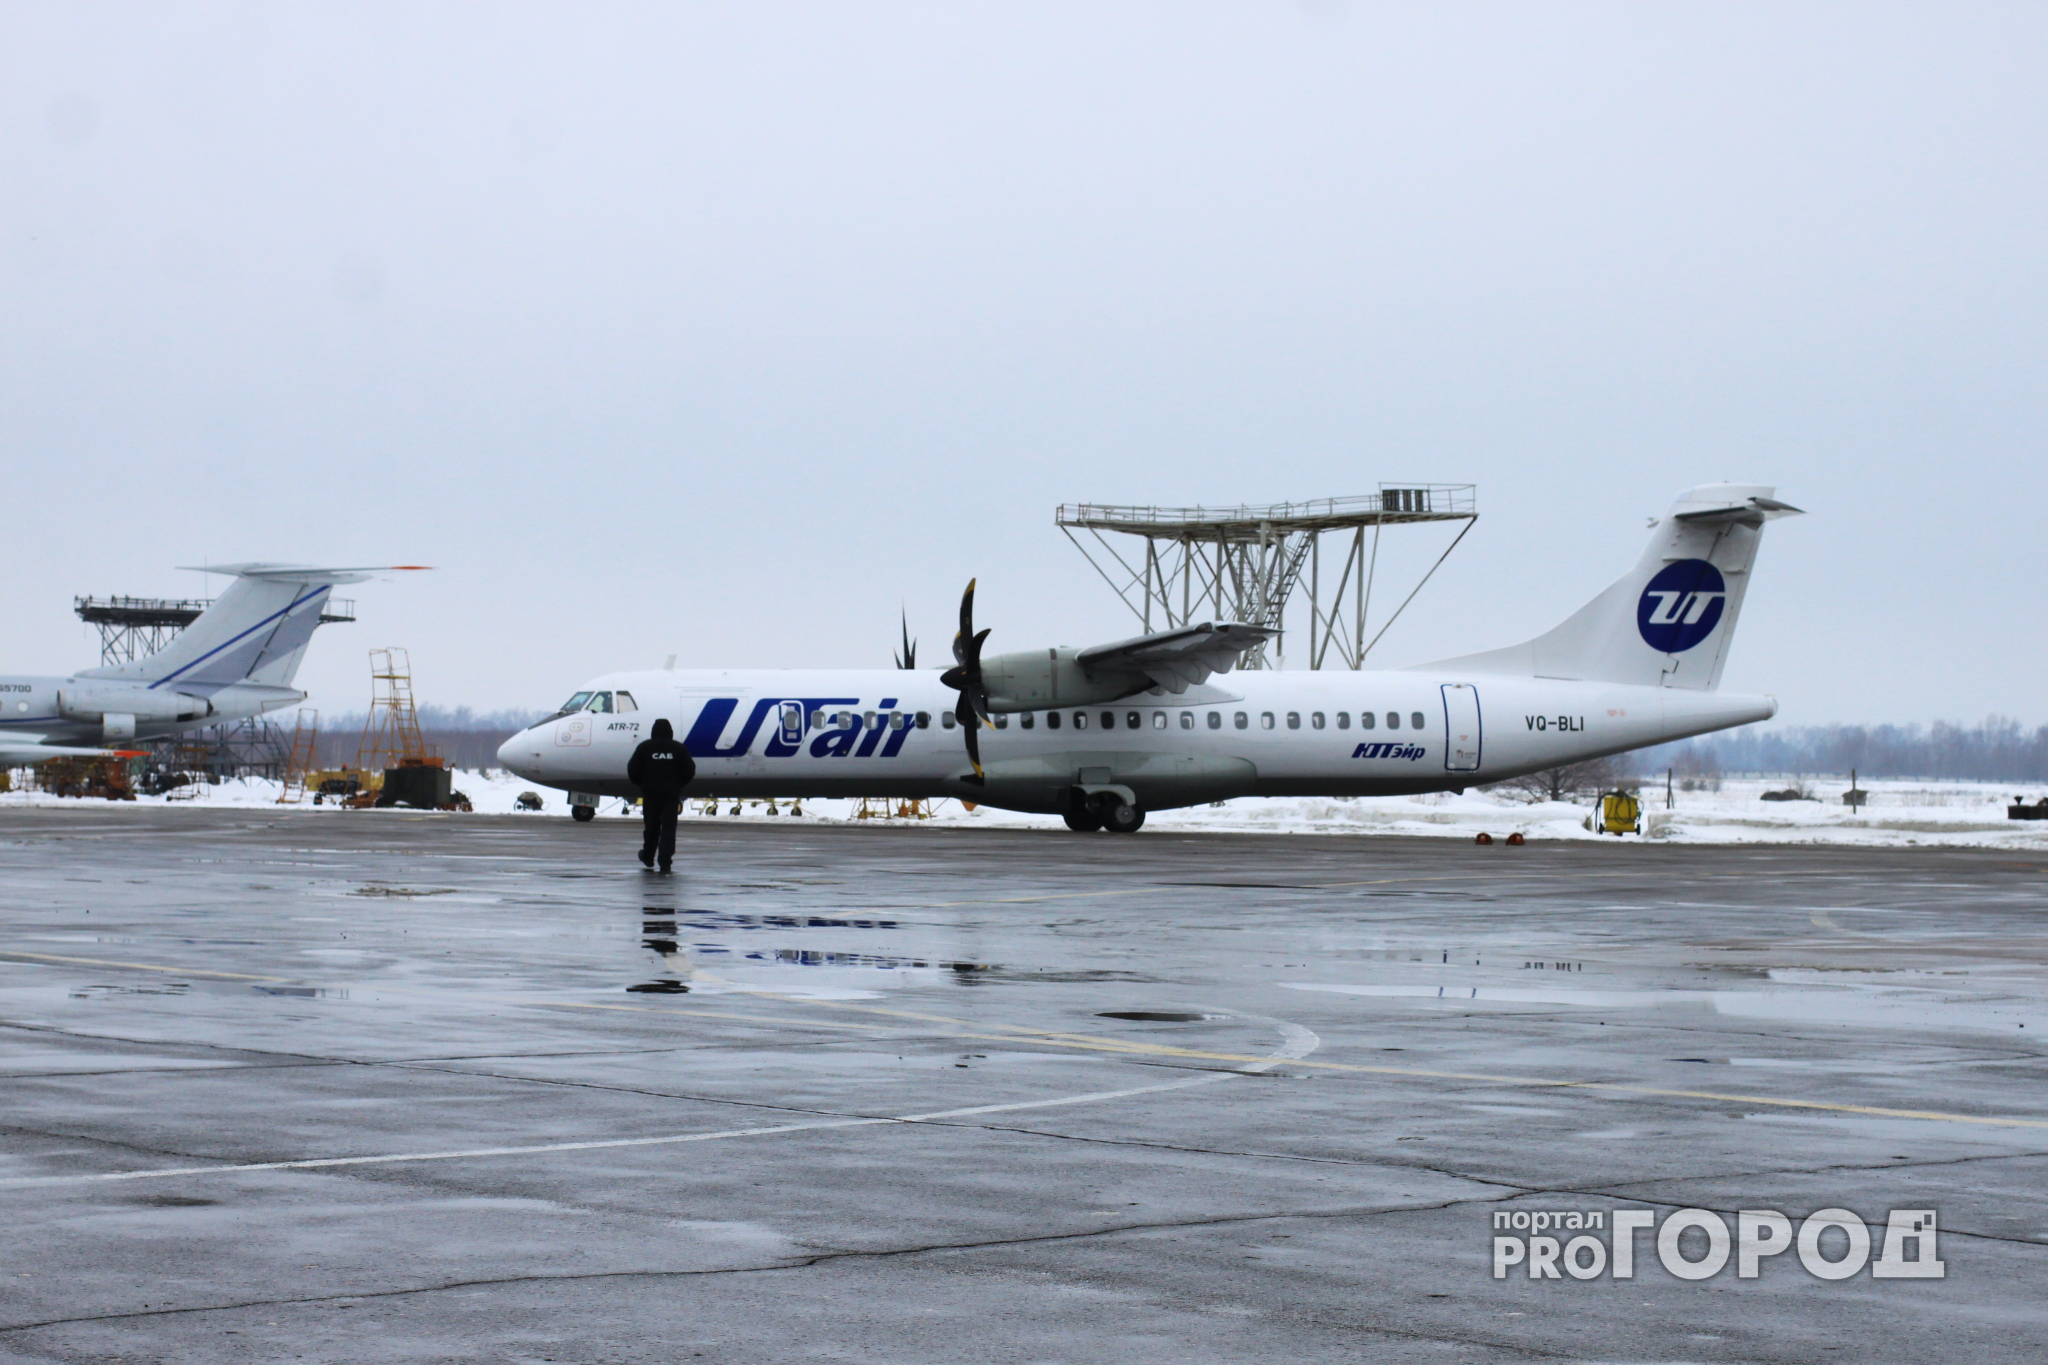 В 2018 году возобновится авиасообщение между Ульяновском и Нижним Новгородом